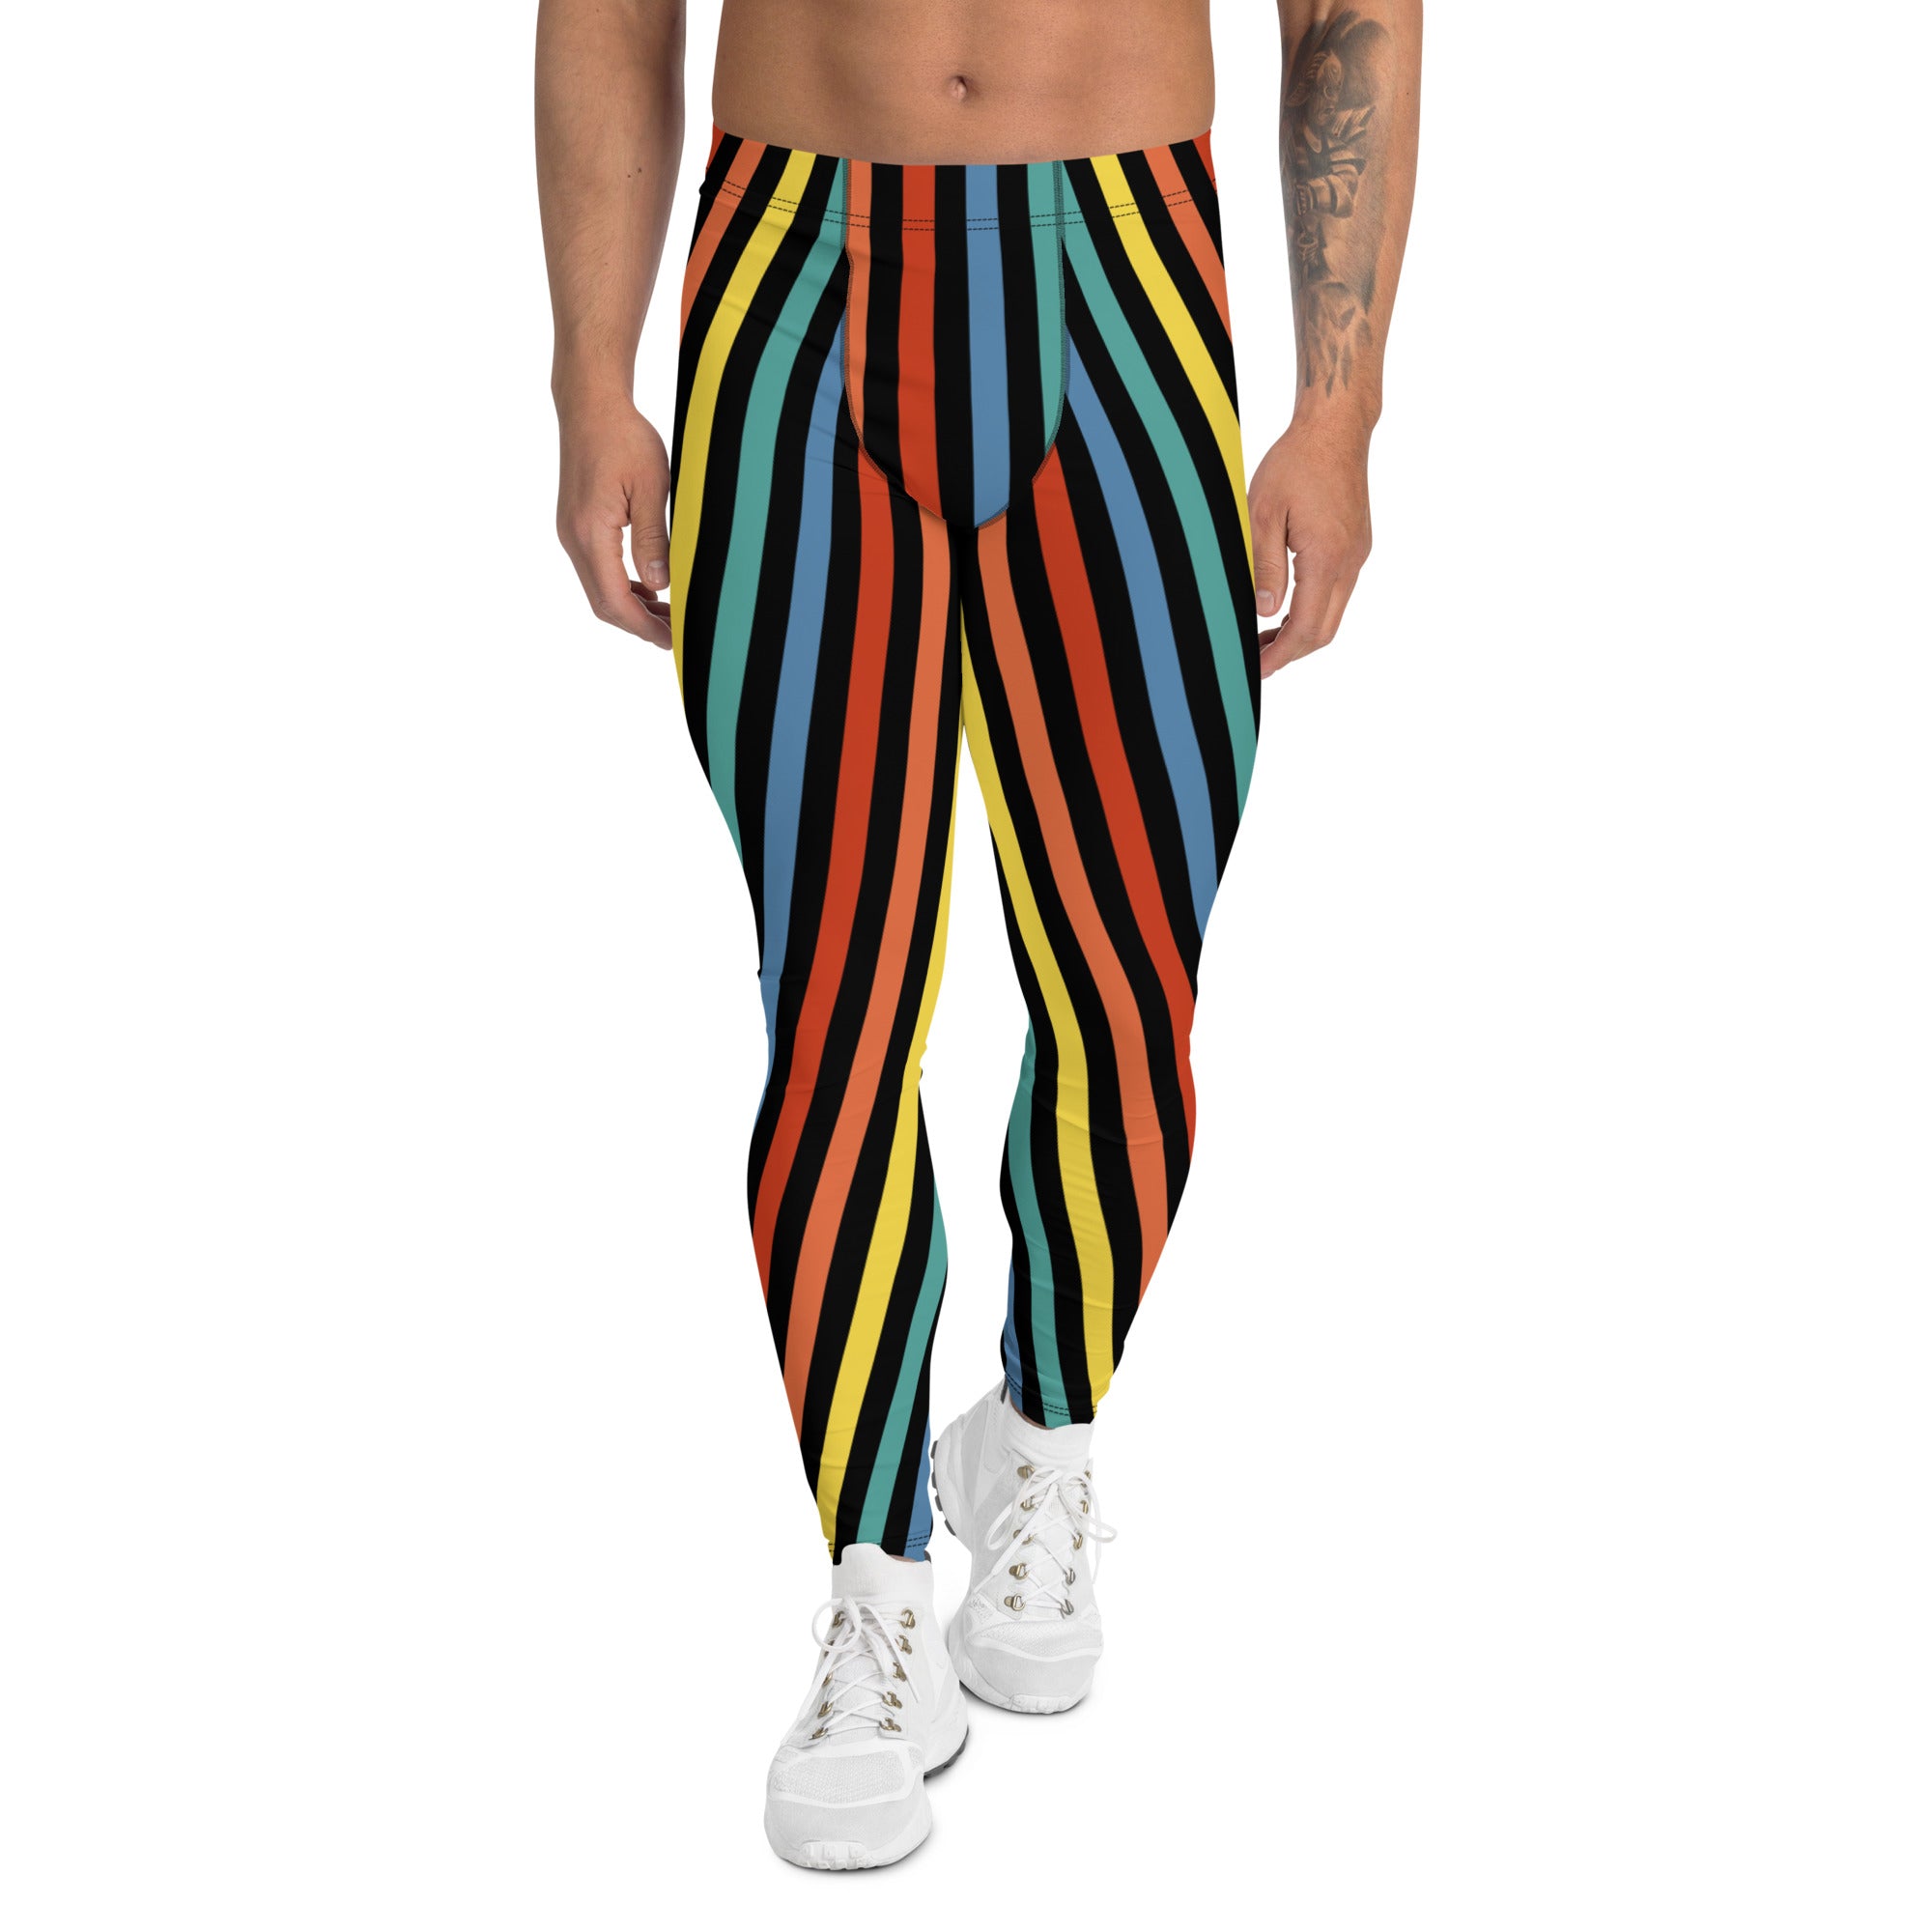 Striped Rainbow Pride Men Leggings Meggings Activewear Pants